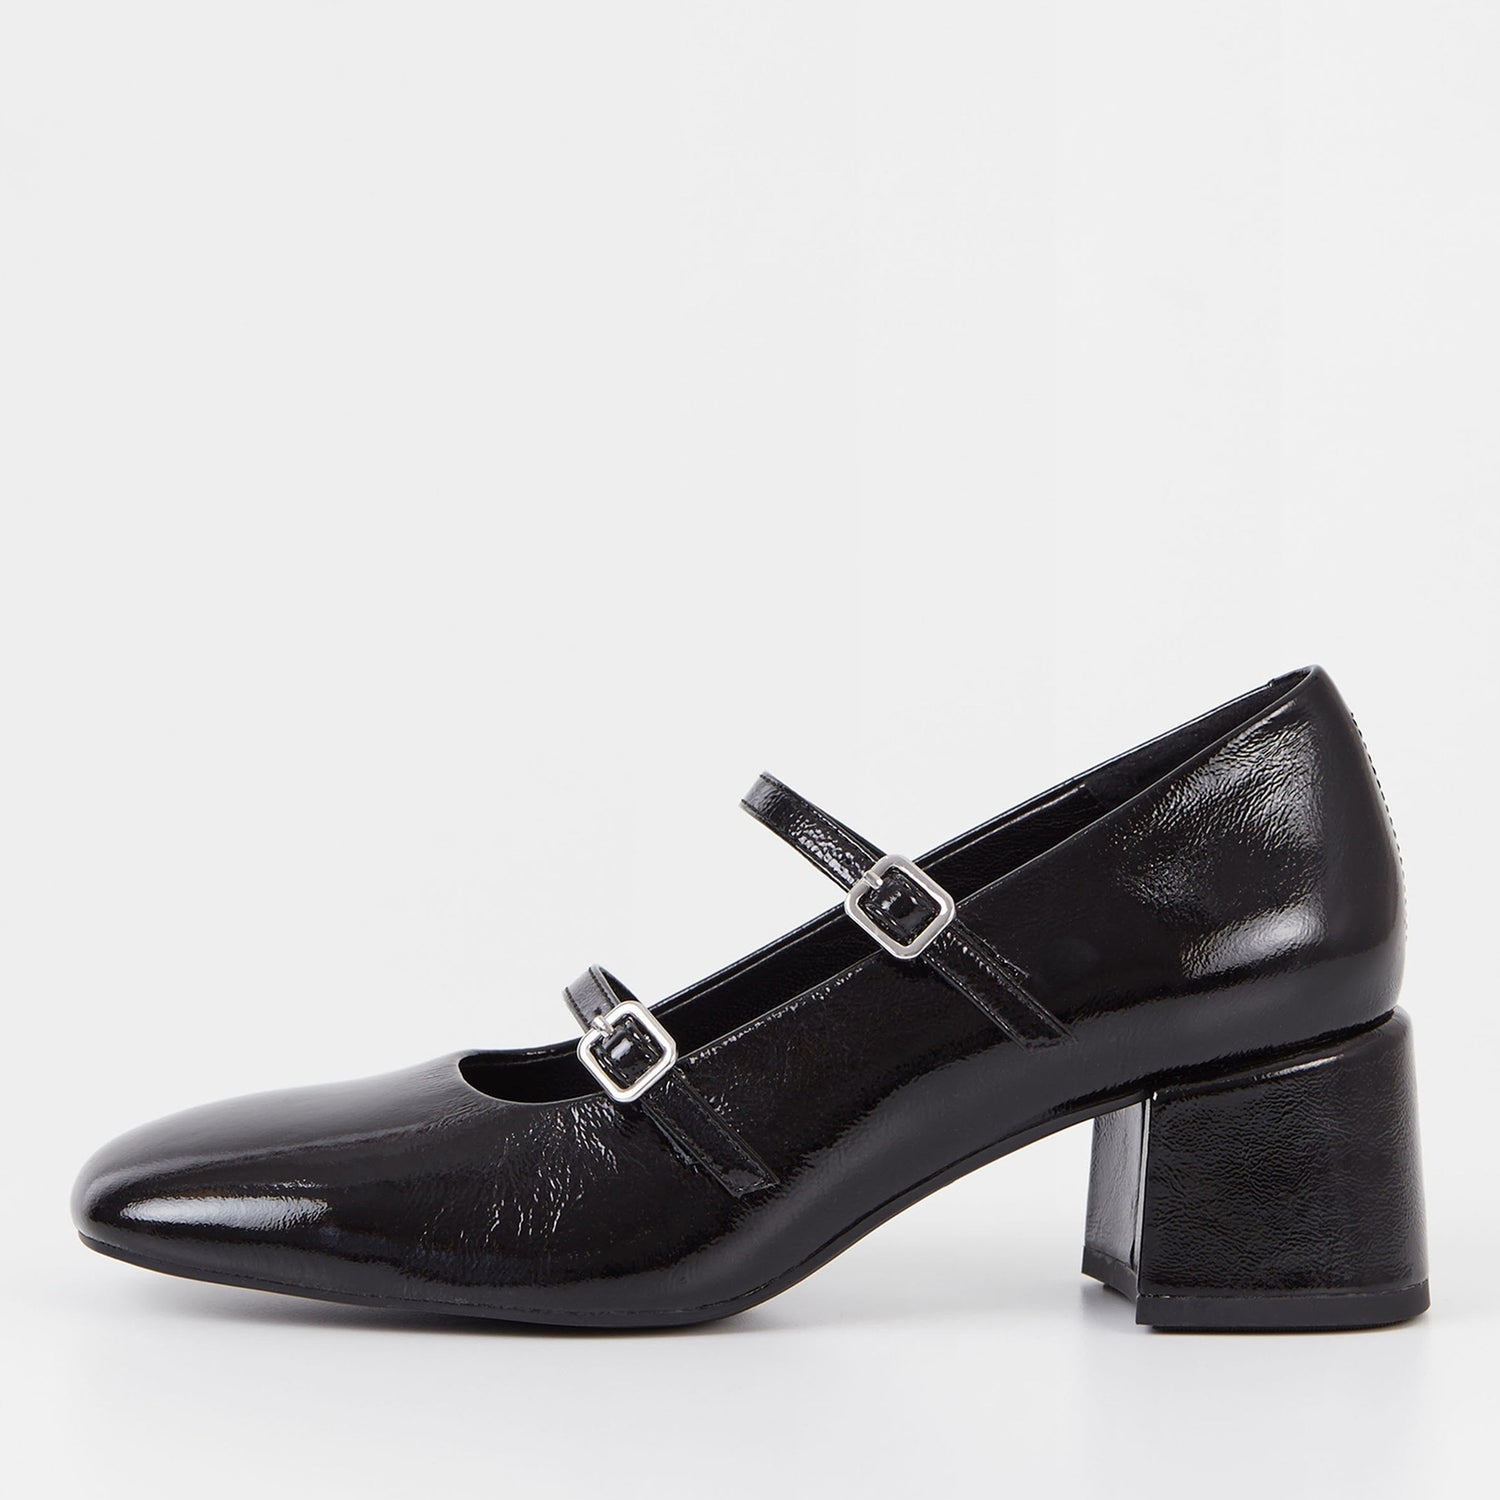 Vagabond Women's Adison Patent-Leather Heeled Mary Jane Shoes - UK 7